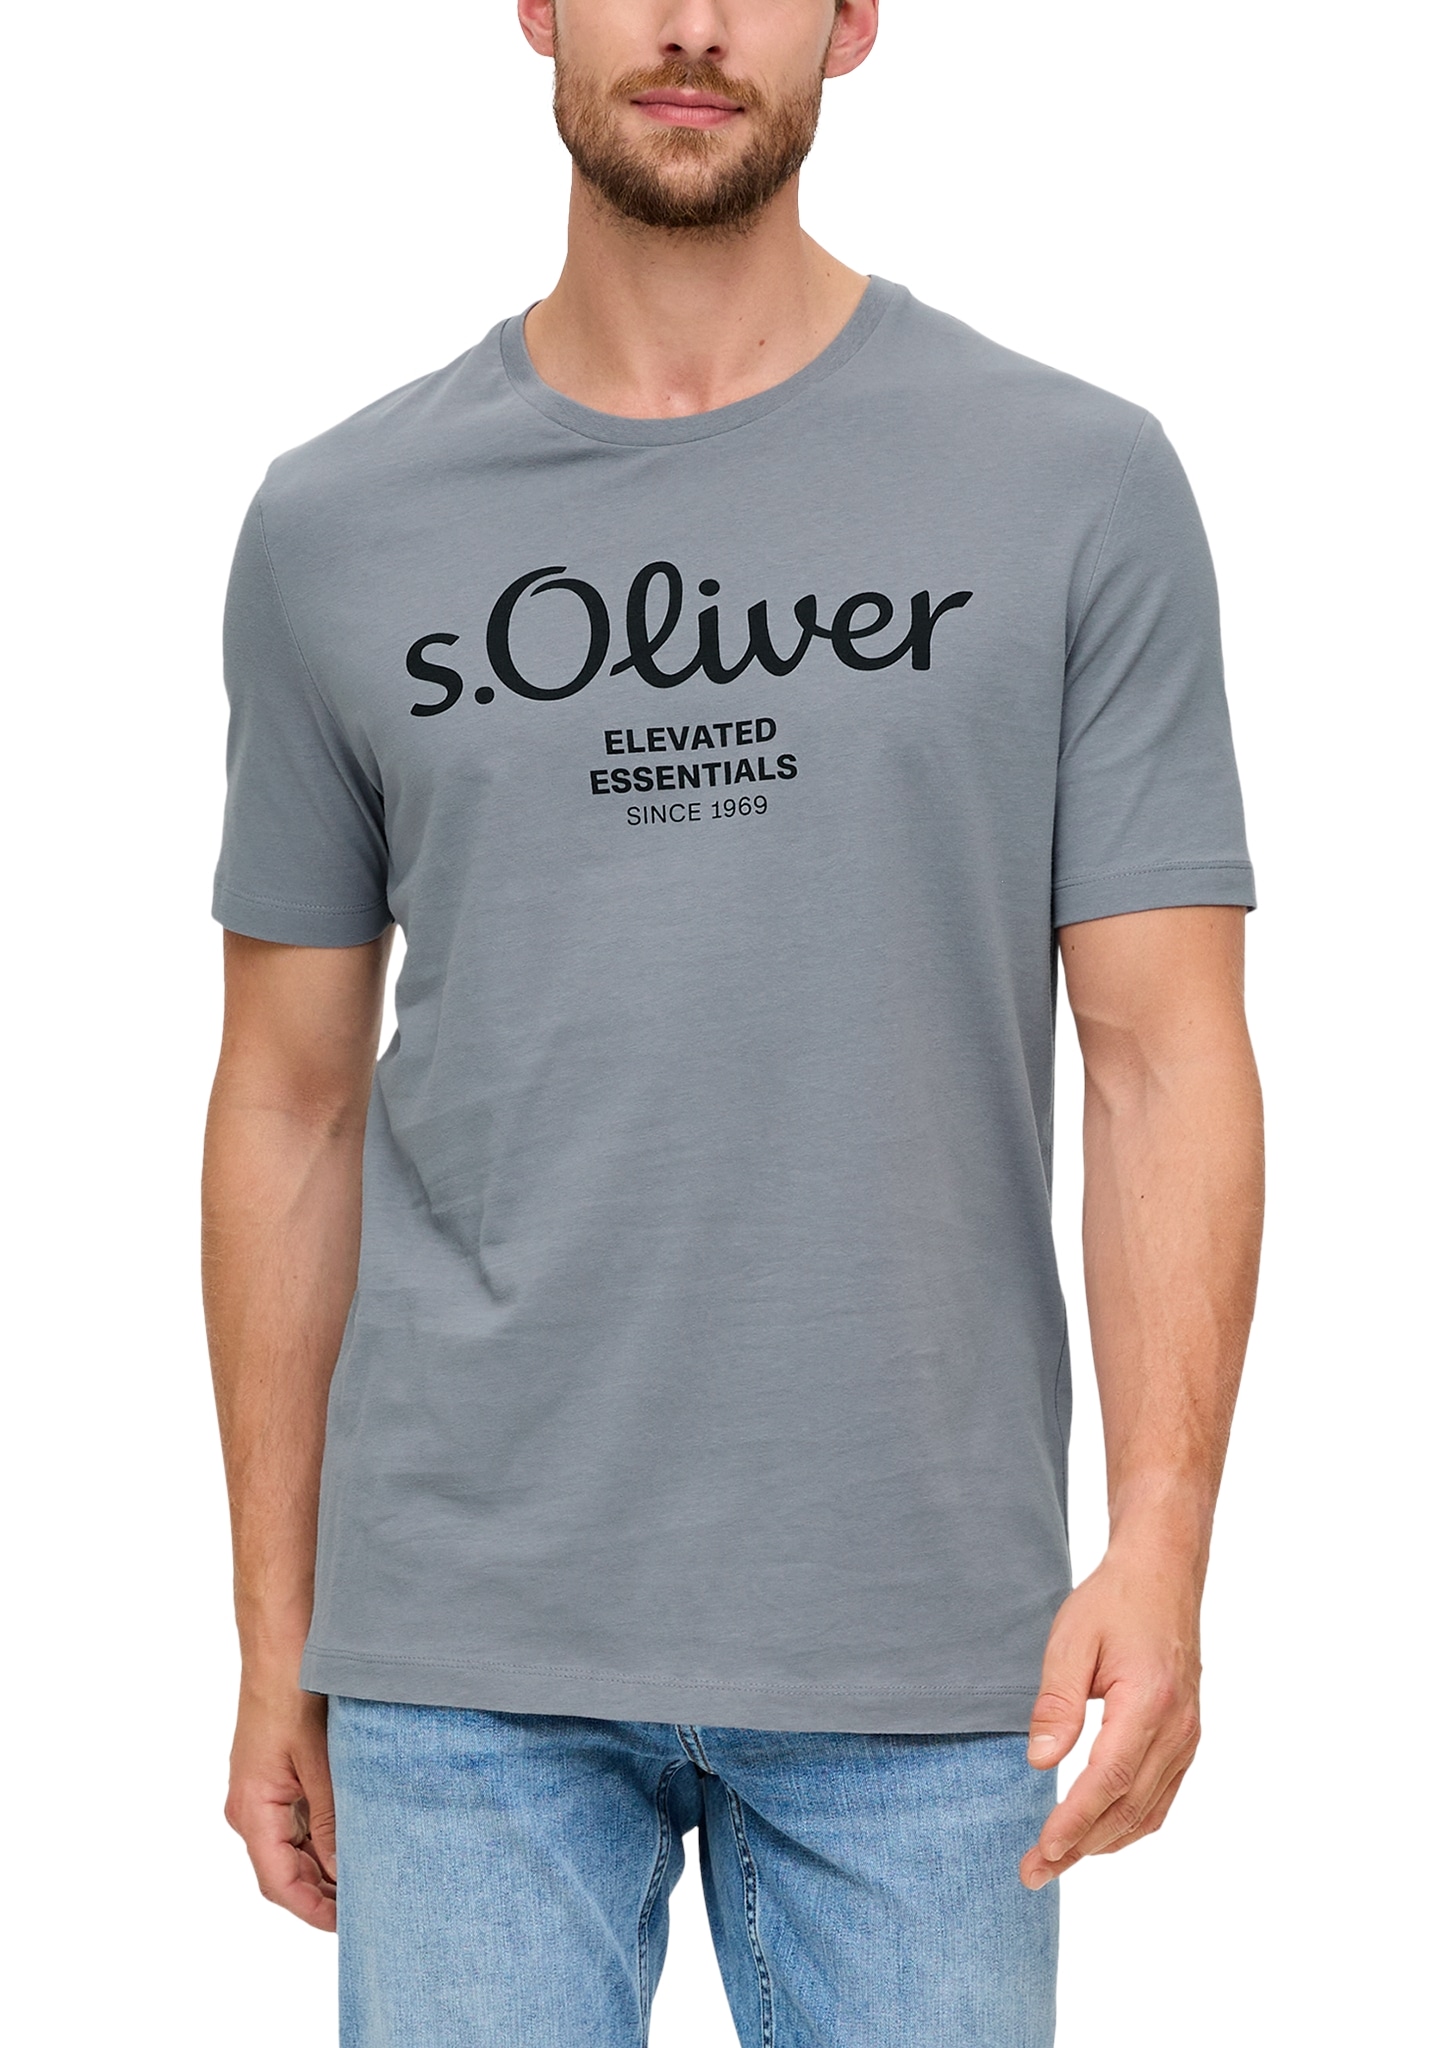 s.Oliver T-Shirt von s.Oliver